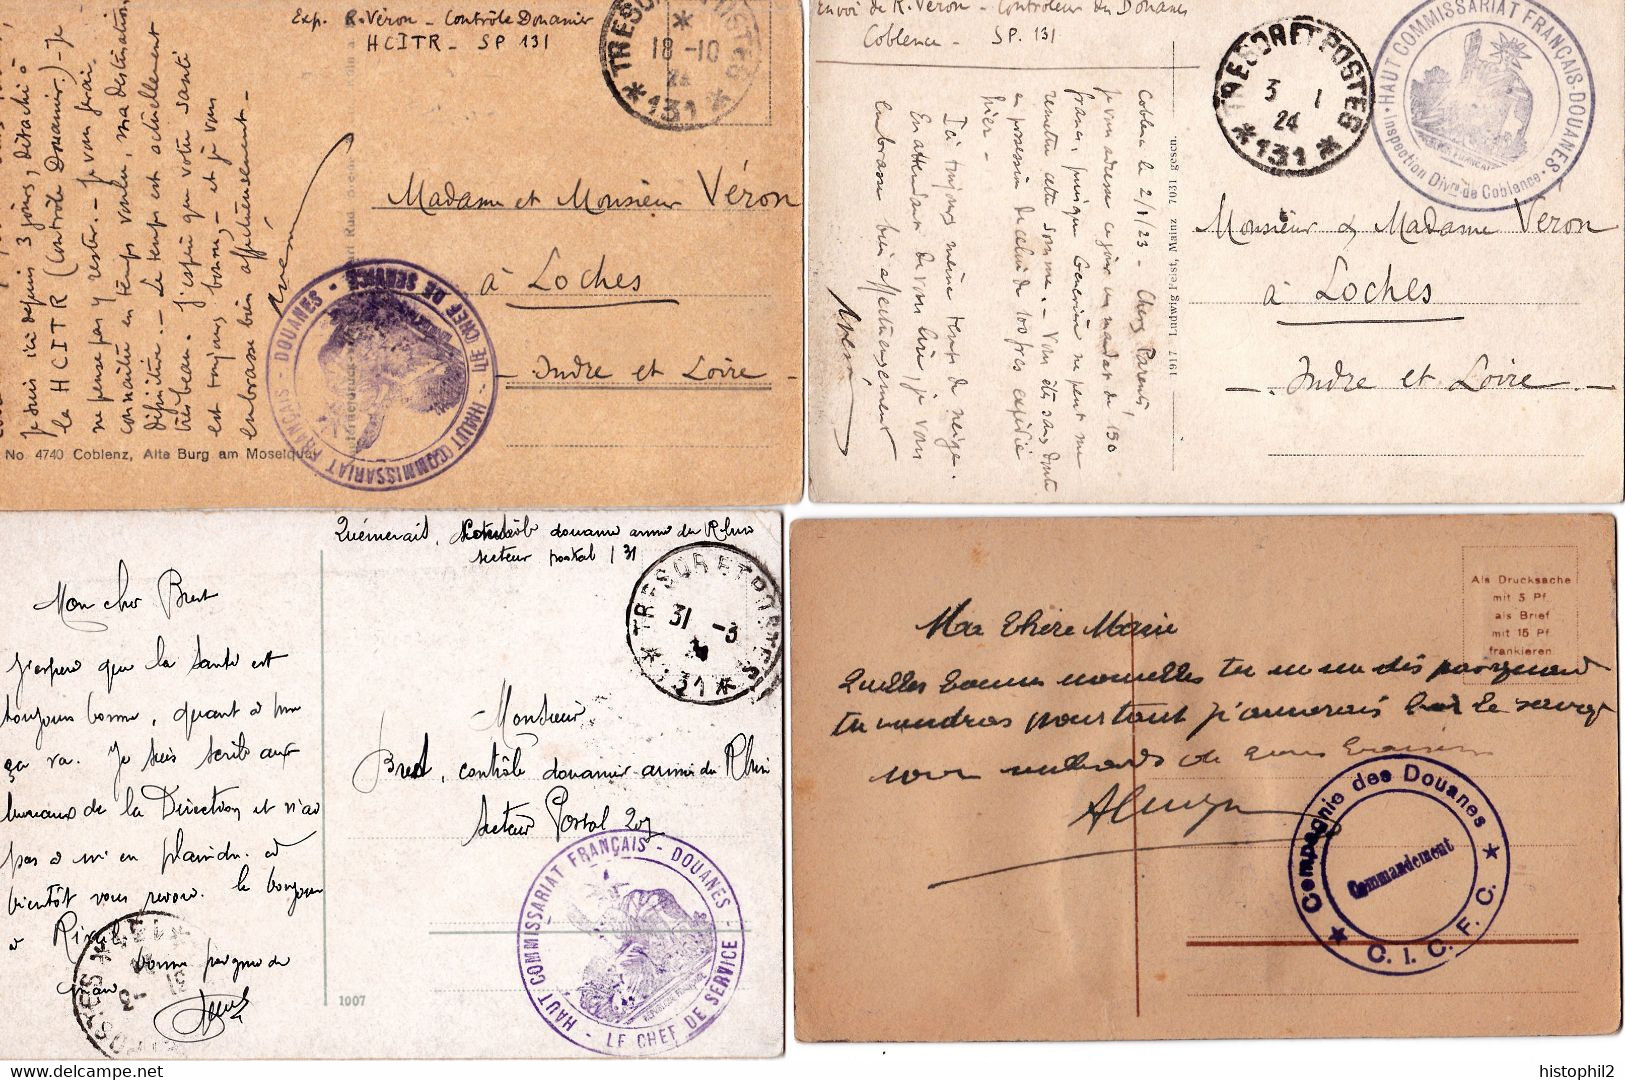 Exceptionnelle collection de 20 CP ill occupation française douaniers Rhin & Ruhr 1923-1924 en FM sf 1 affranchie à 10c